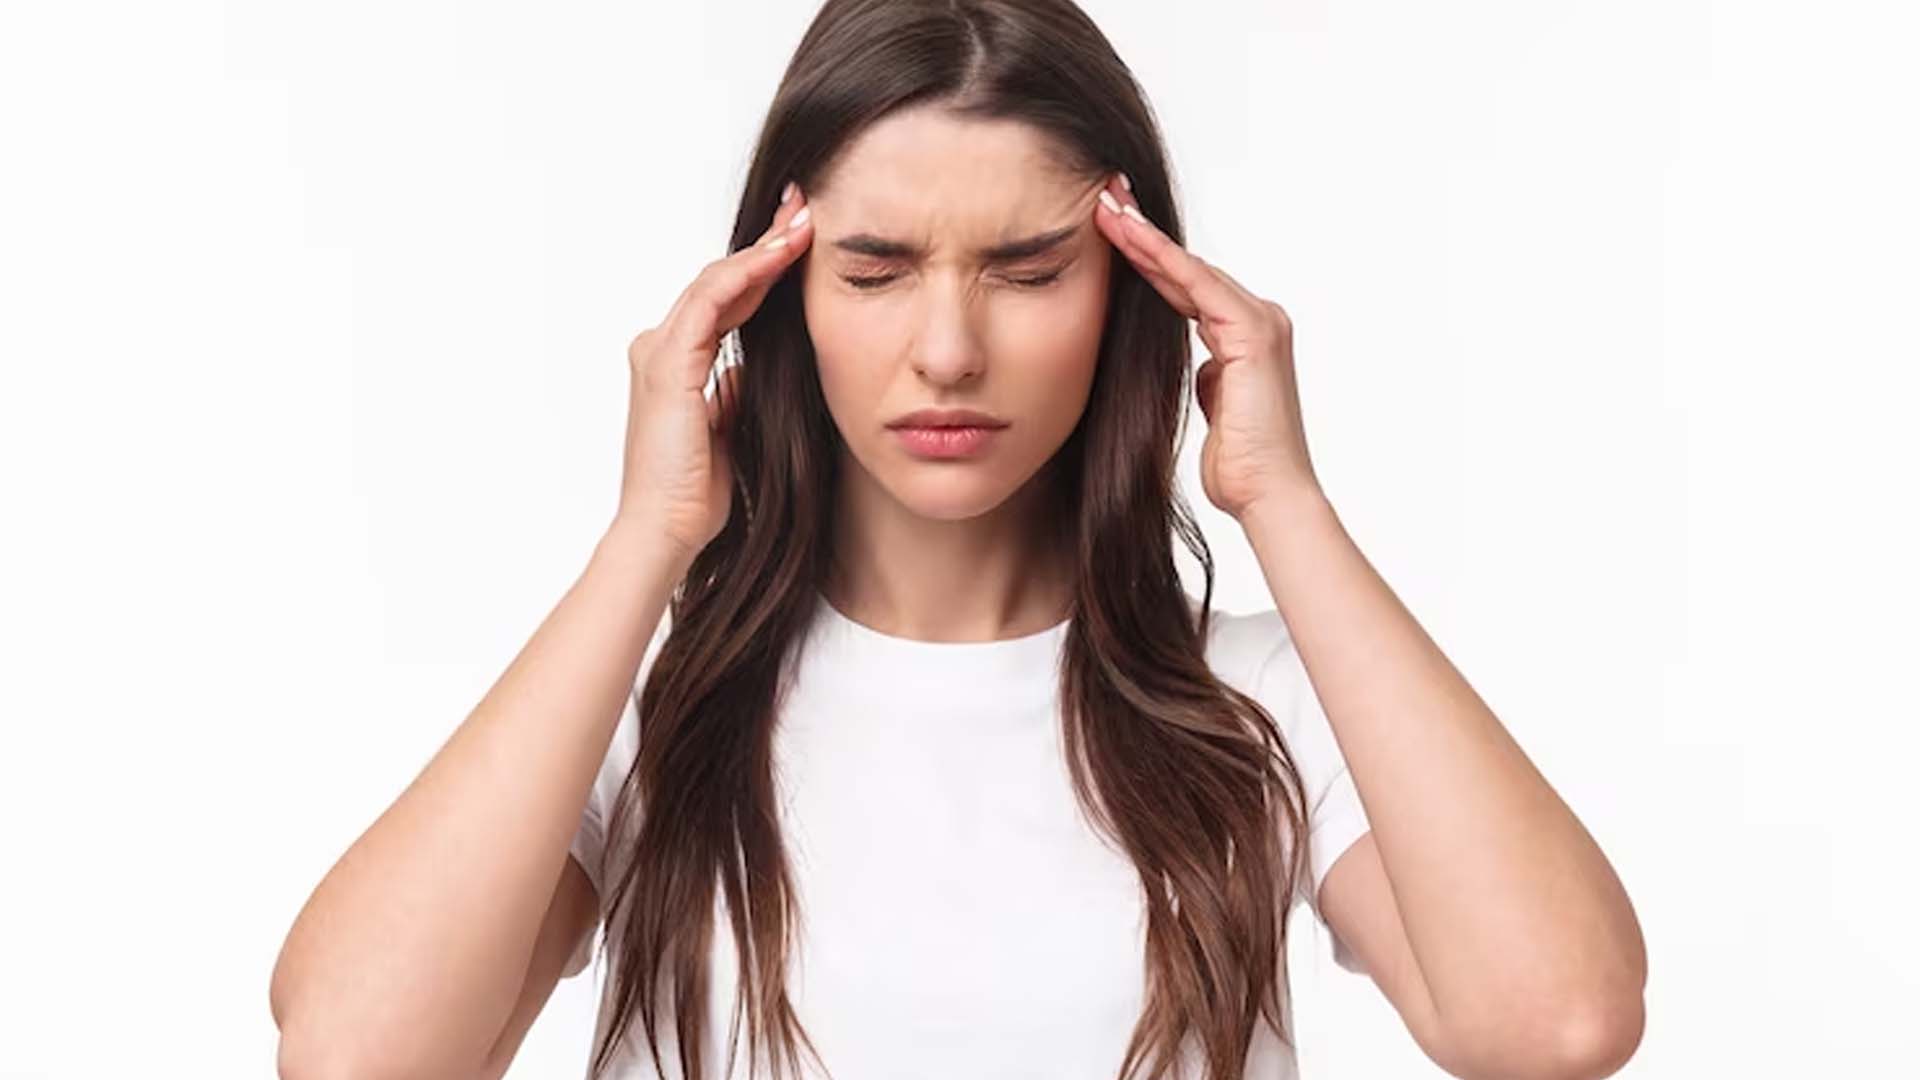 Can Stress Cause Headaches?